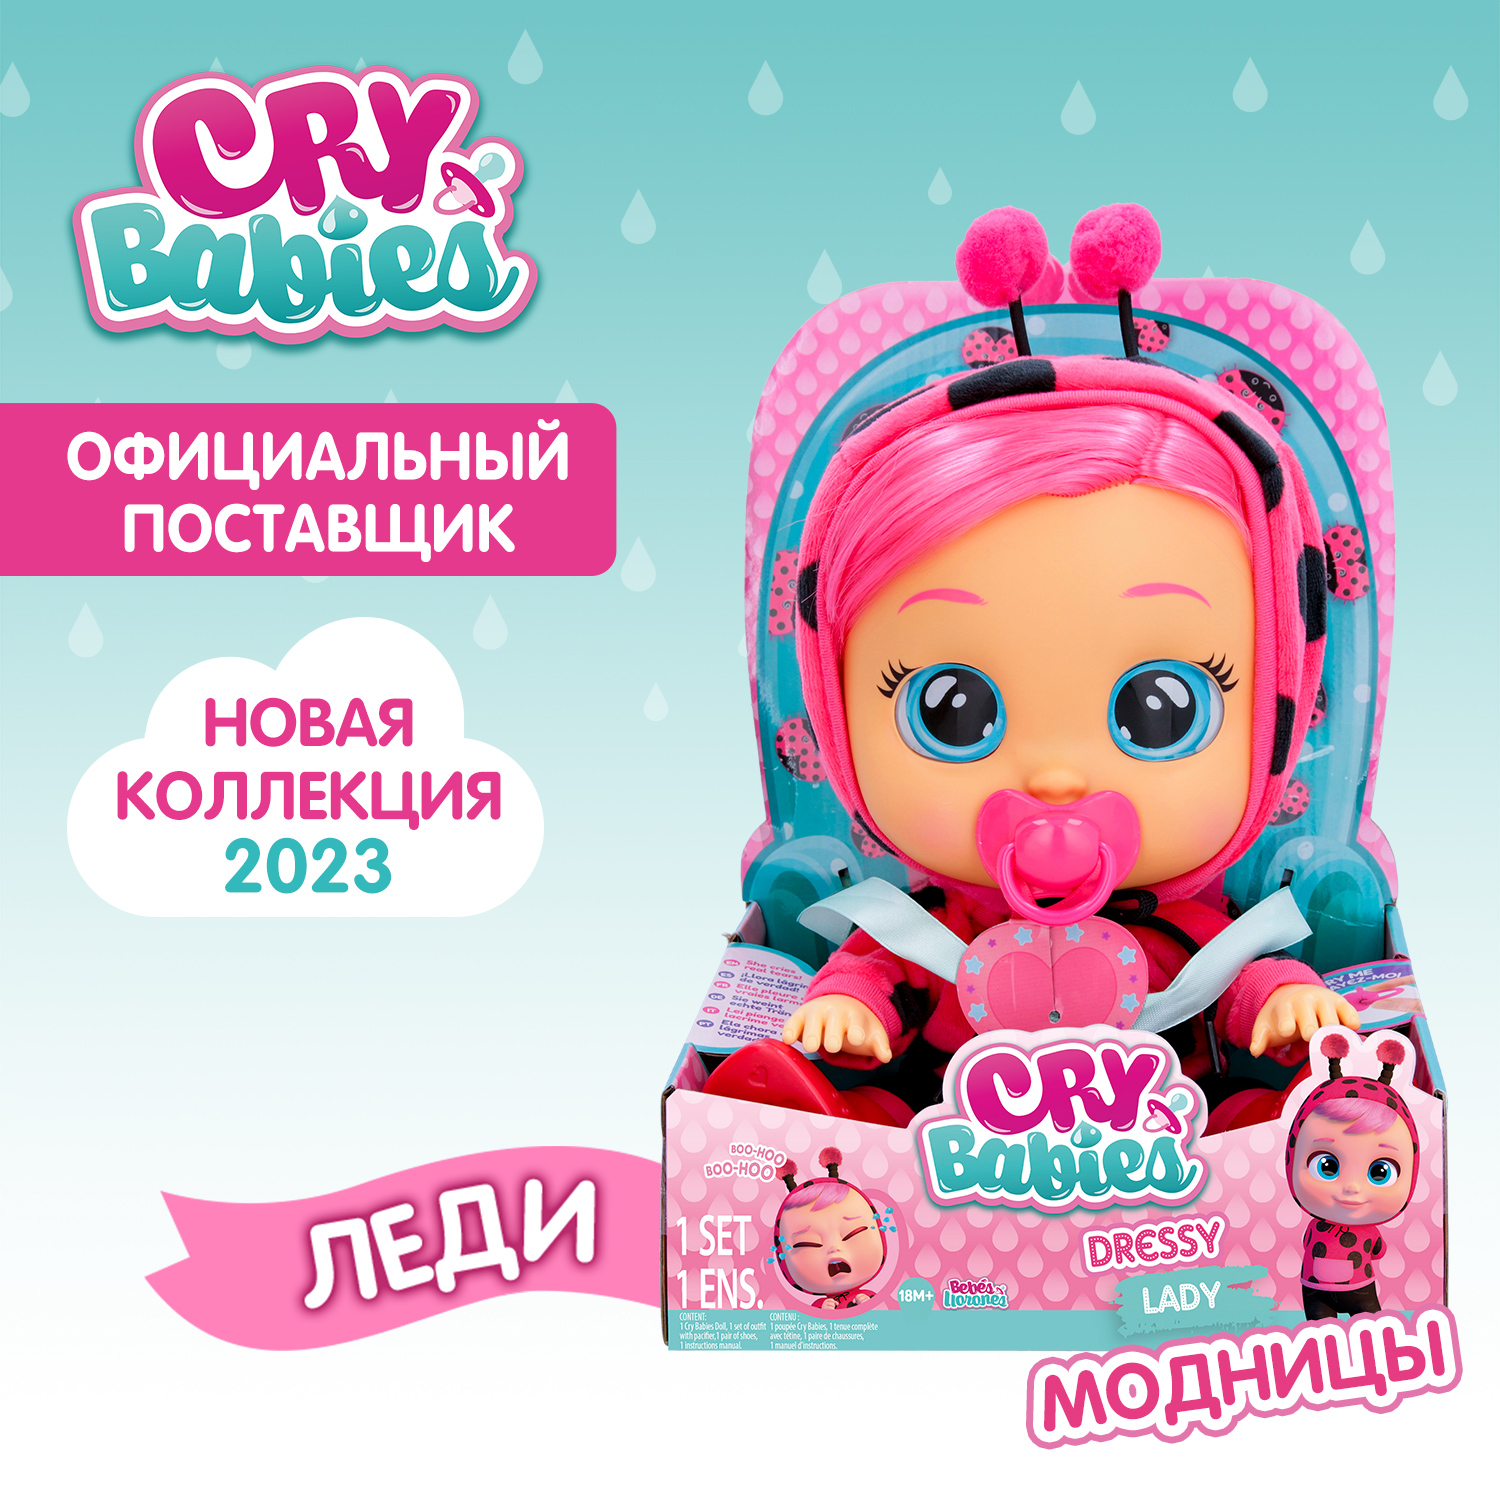 Кукла Cry Babies Леди Модница, интерактивная, плачущая, 40885 кукла cry babies край бебис бруни малышка интерактивная плачущая 41039